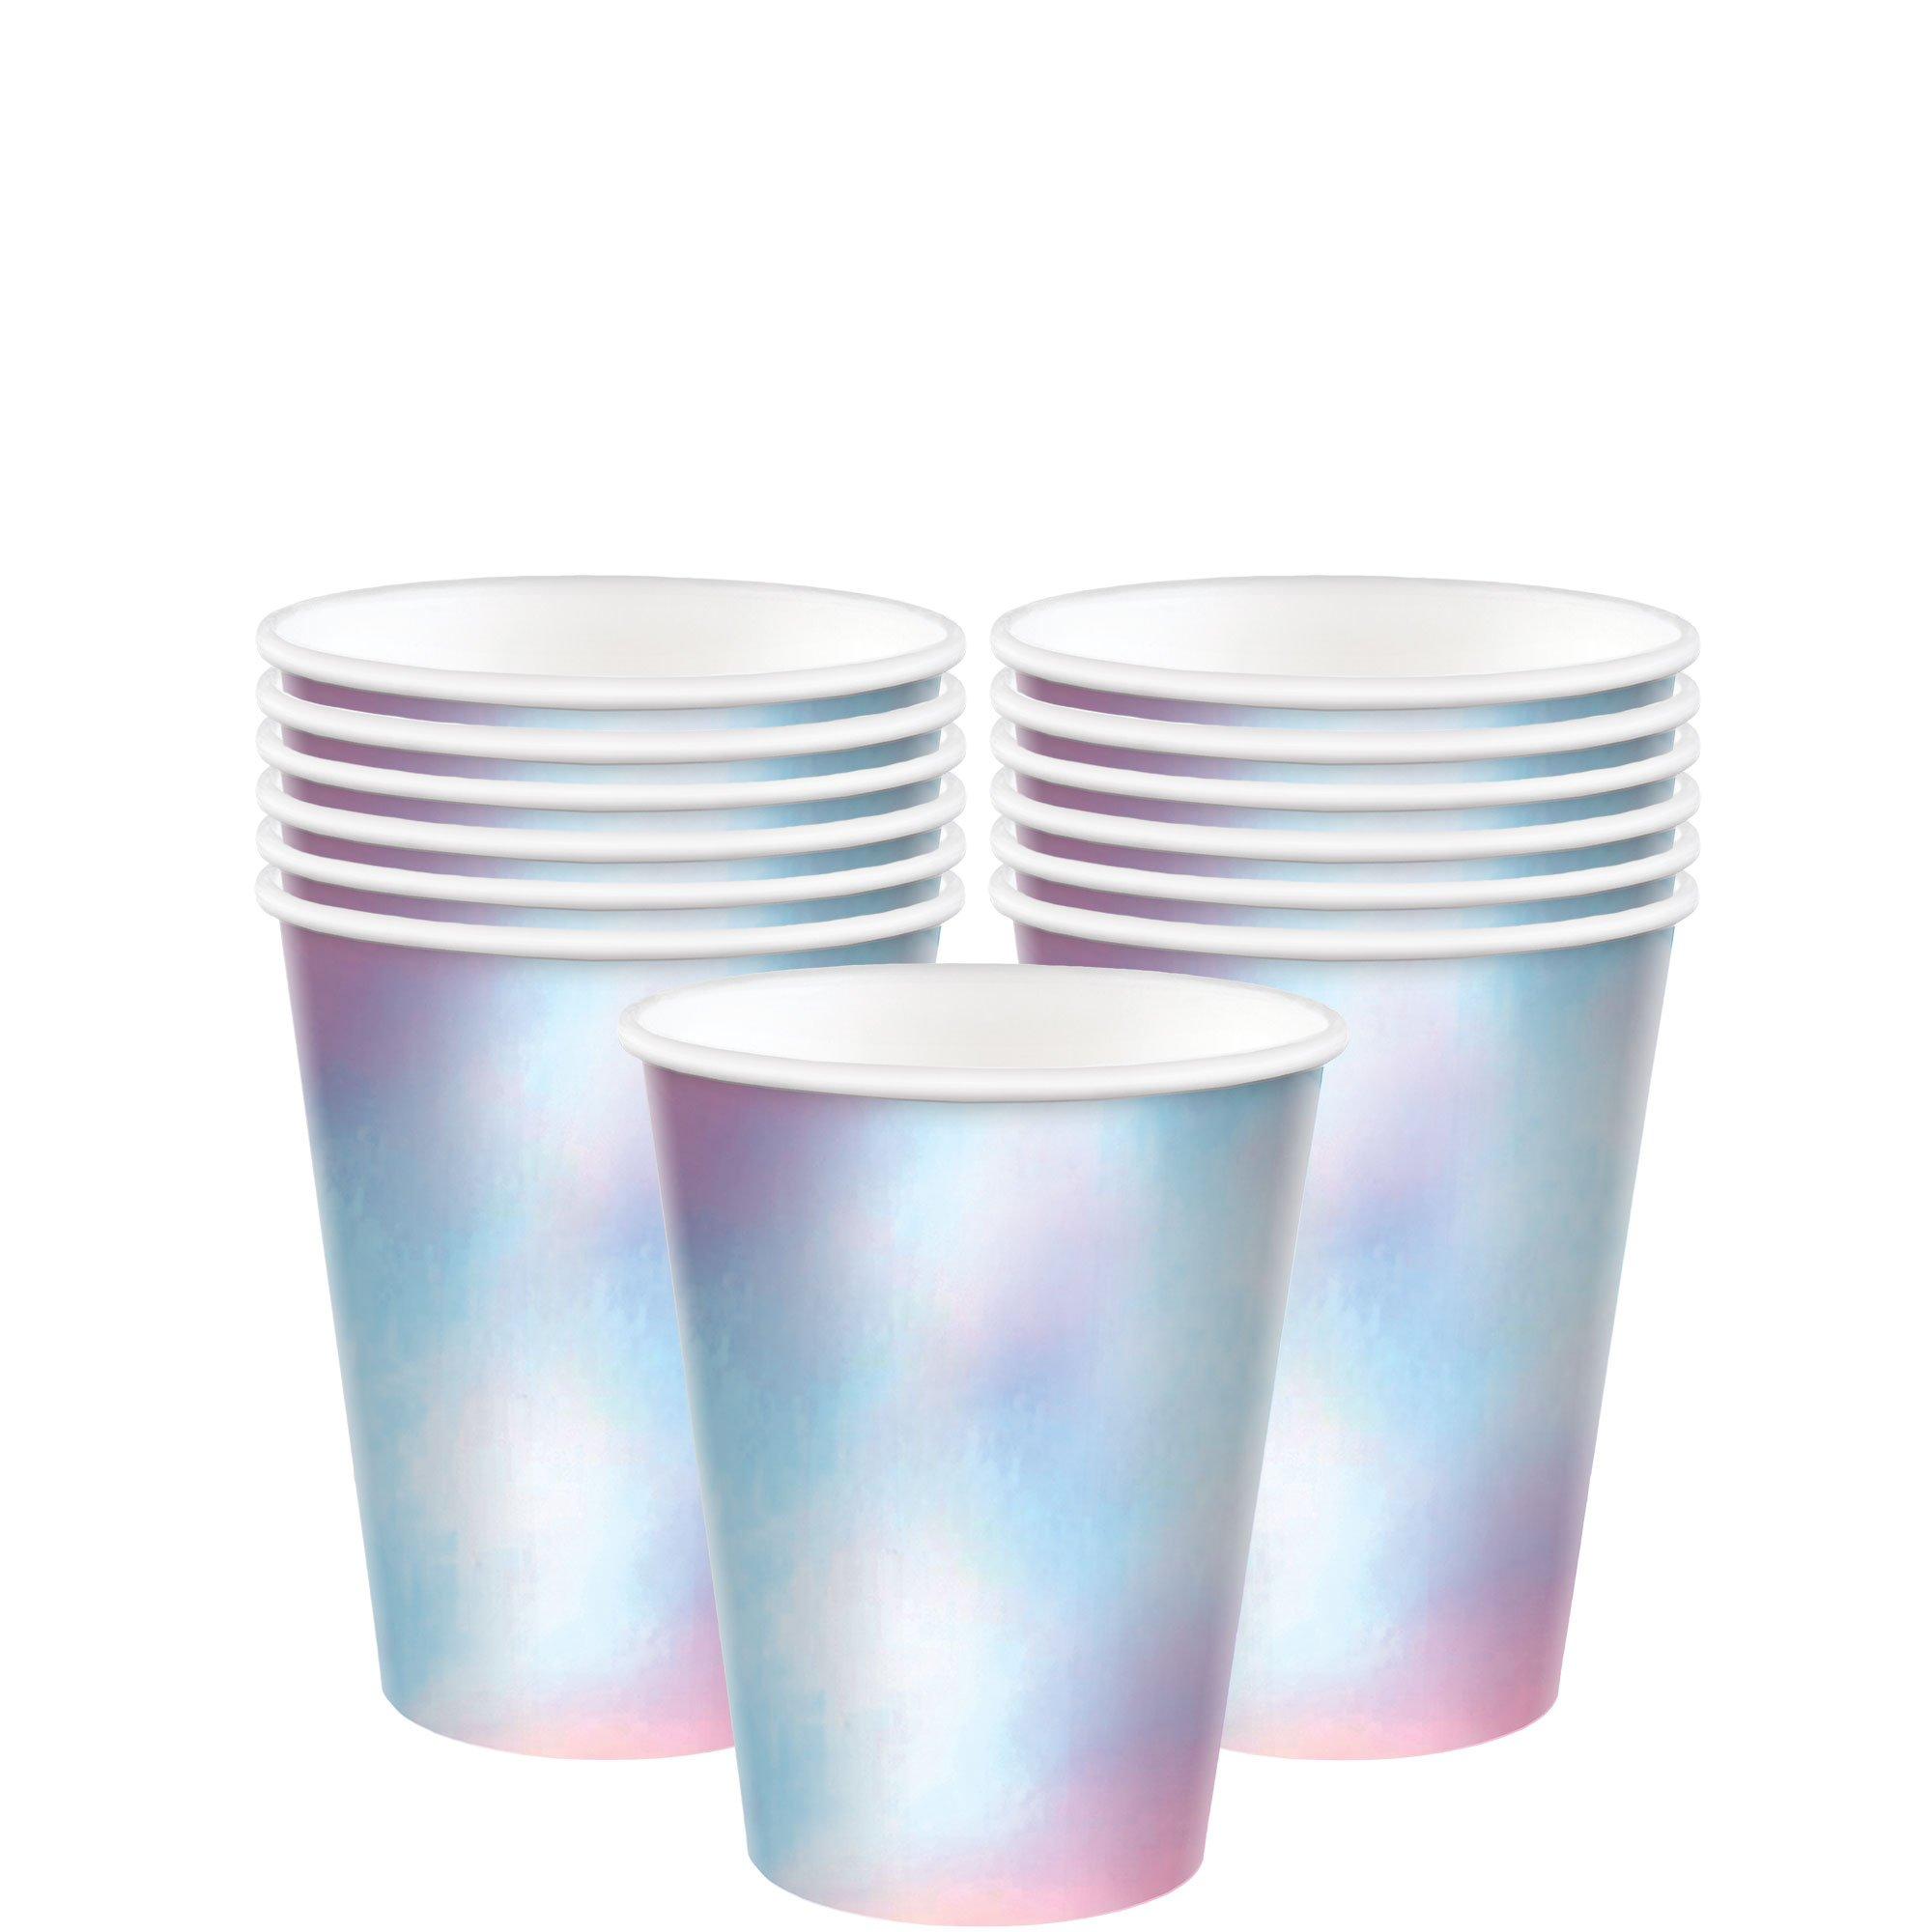 200 count Fiesta Disposable Premium Plastic Bathroom Cups 2.5oz